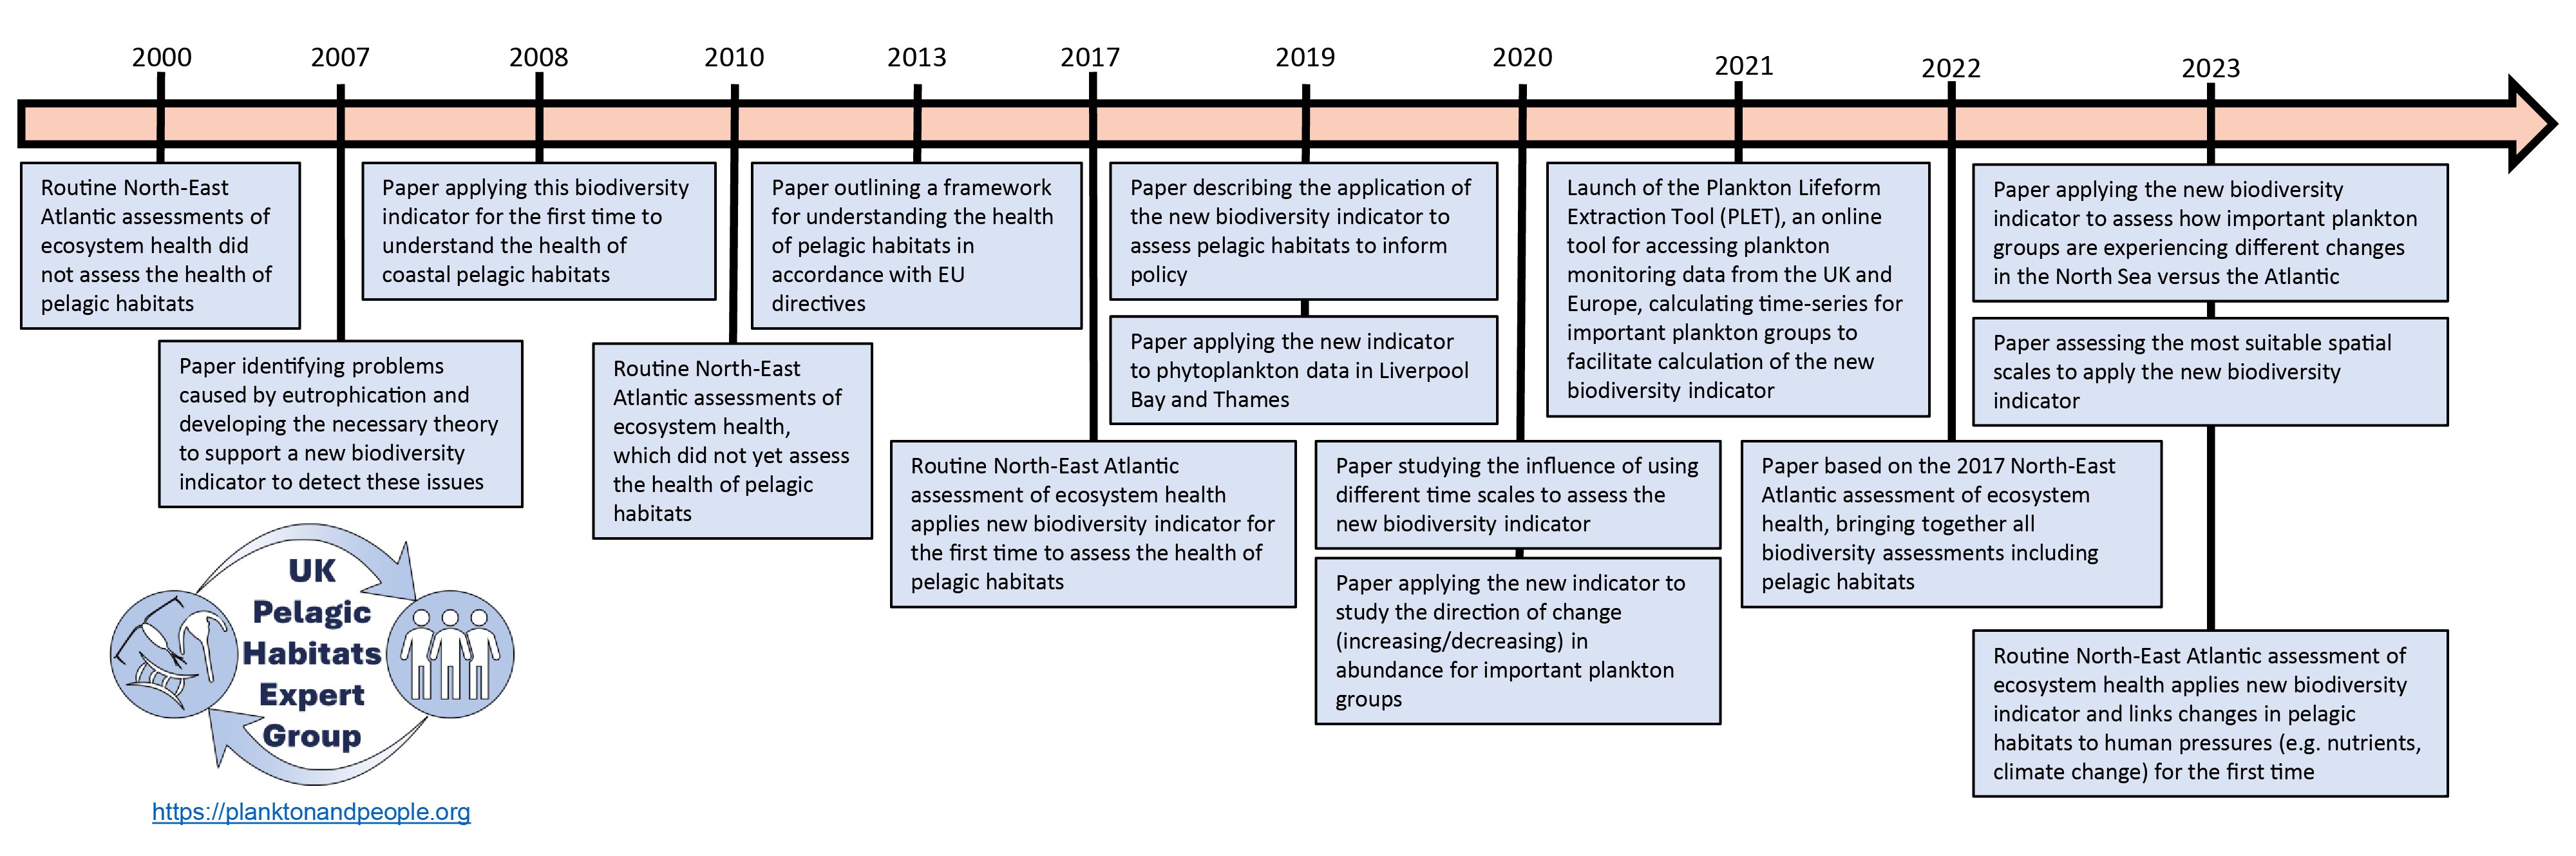 Timeline of key policy developments 